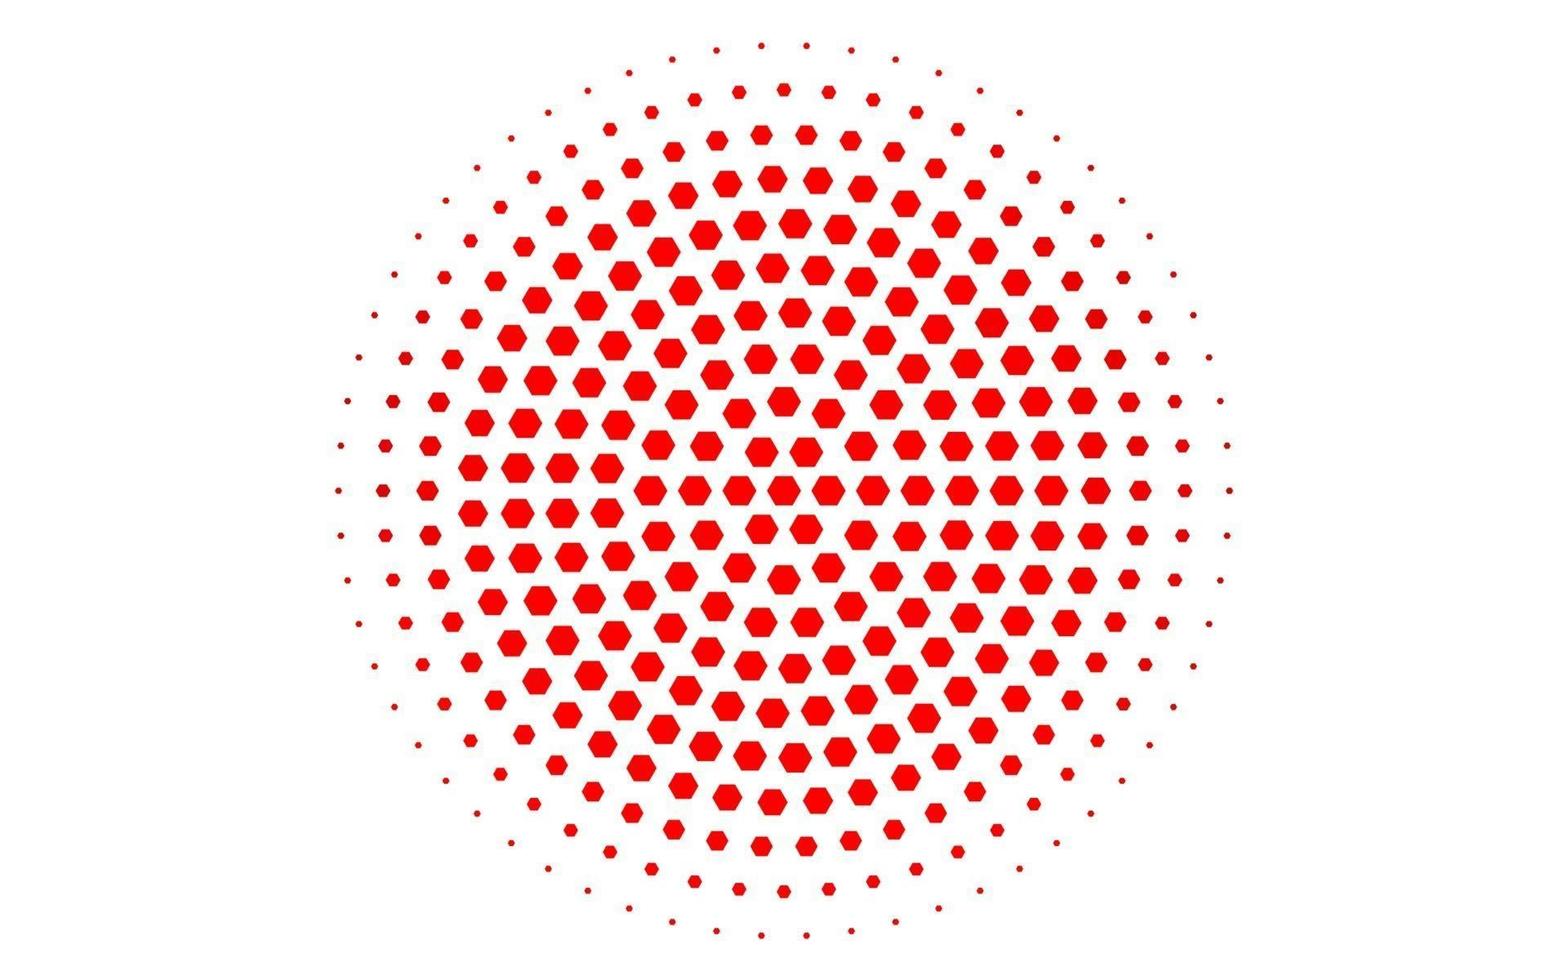 motif vectoriel rouge clair avec des hexagones colorés.